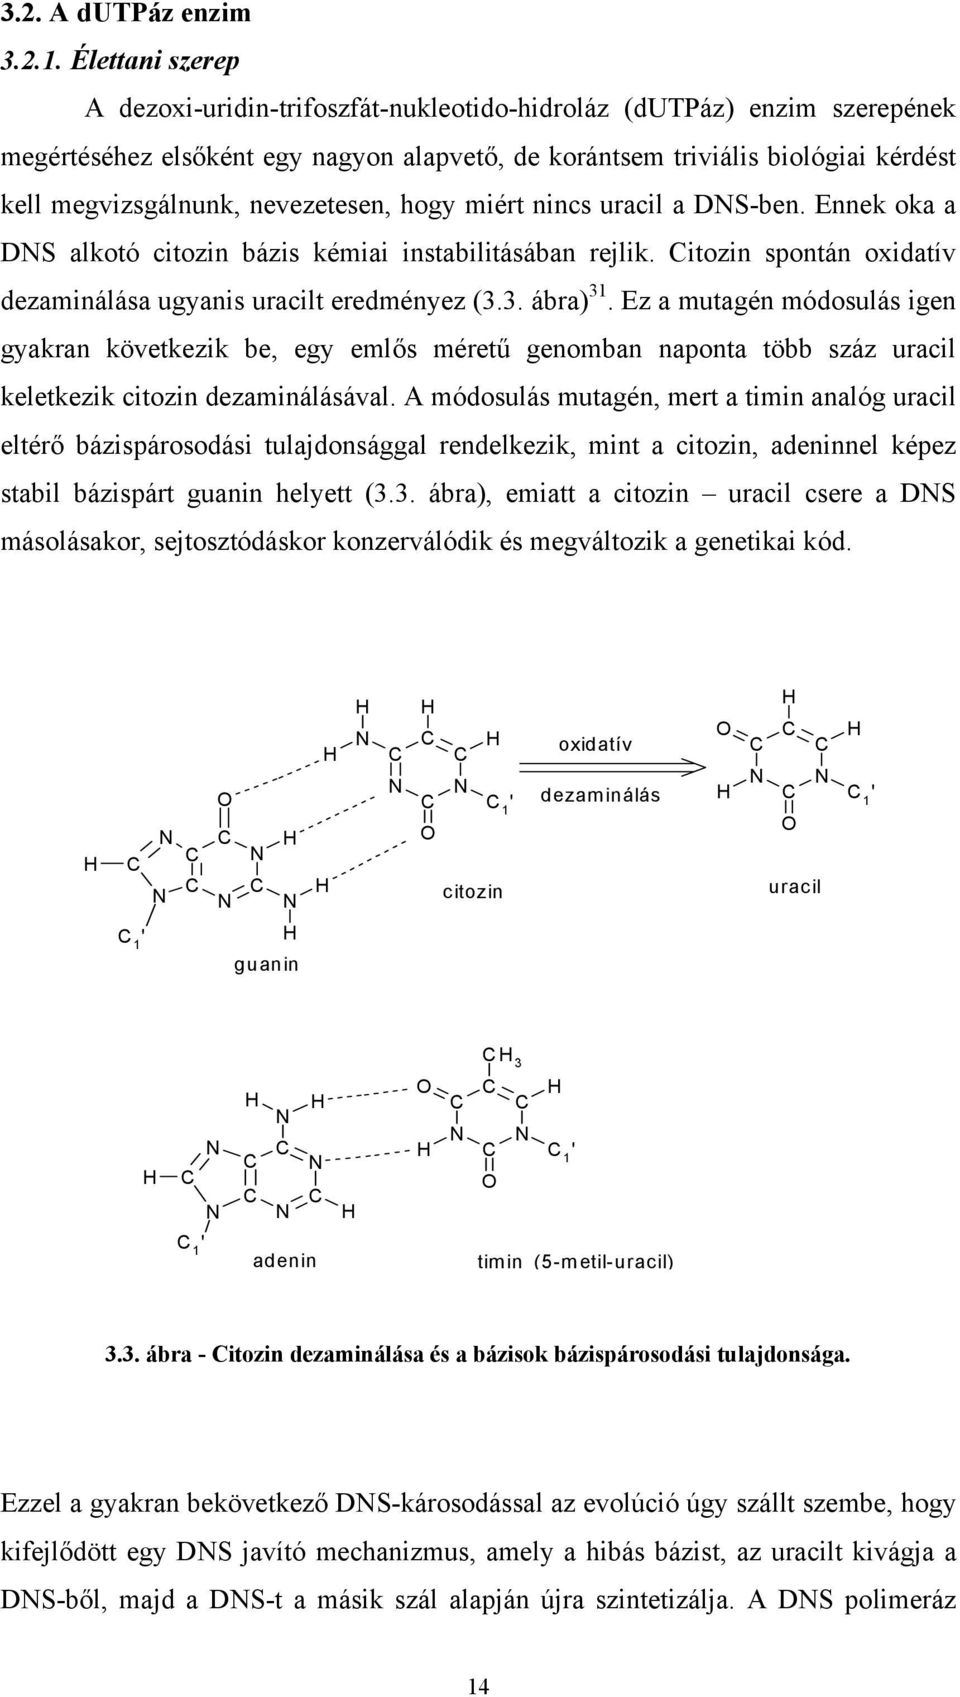 nevezetesen, hogy miért nincs uracil a DNS-ben. Ennek oka a DNS alkotó citozin bázis kémiai instabilitásában rejlik. Citozin spontán oxidatív dezaminálása ugyanis uracilt eredményez (3.3. ábra) 31.